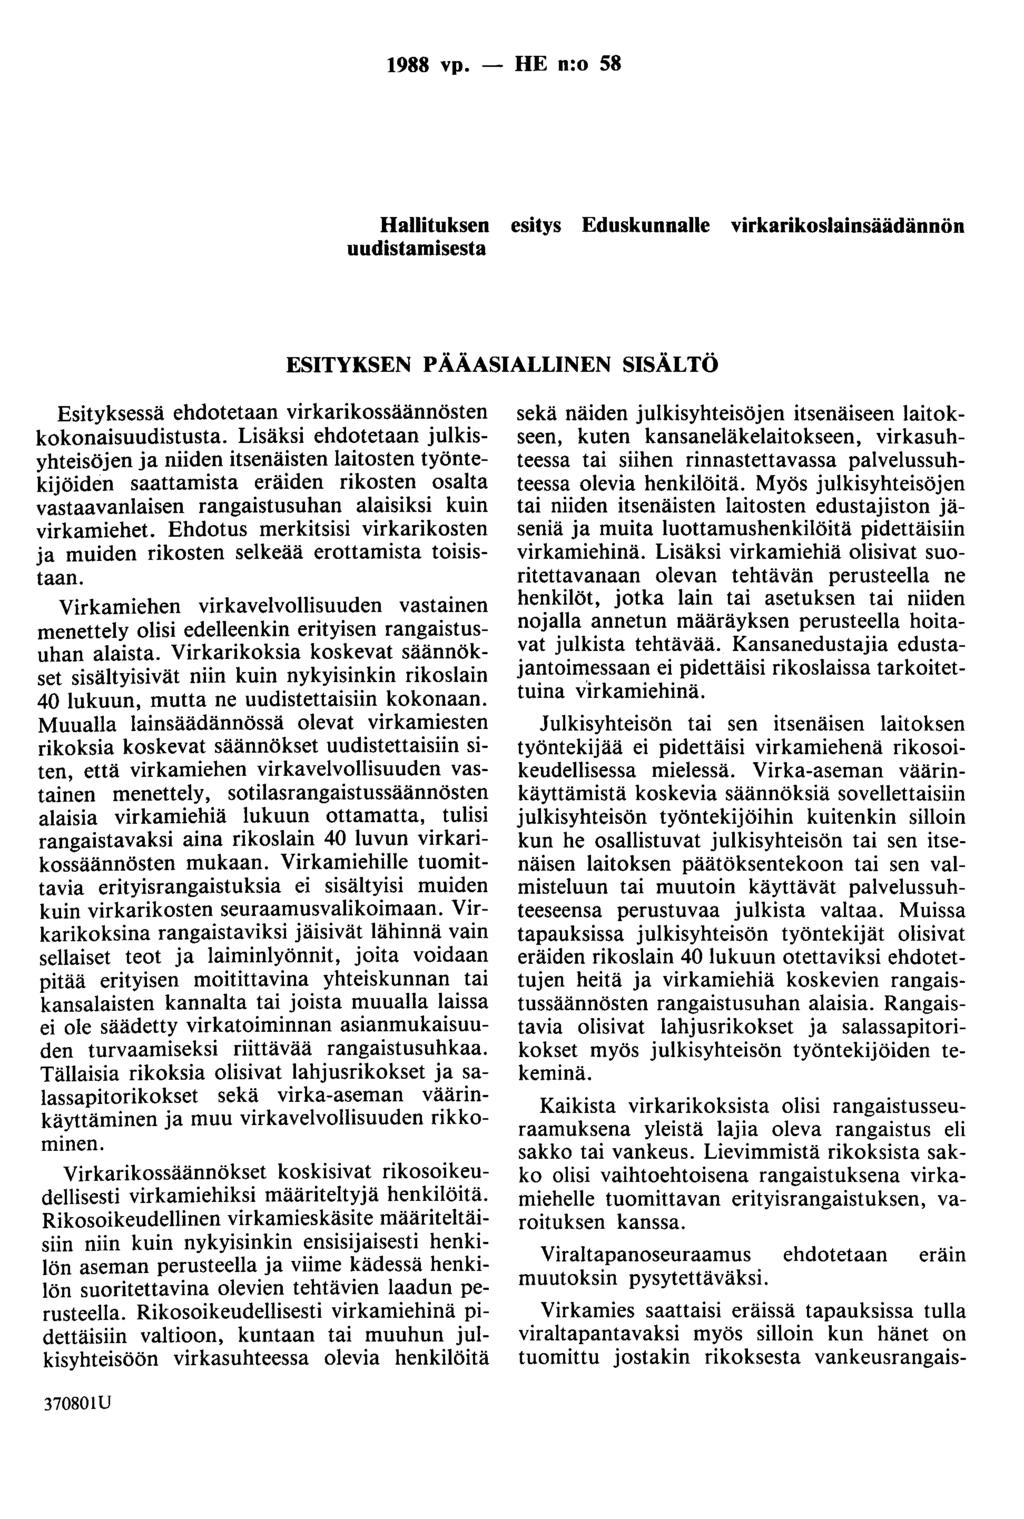 1988 vp. - HE n:o 58 Hallituksen esitys Eduskunnalle virkarikoslainsäädännön uudistamisesta ESITYKSEN PÄÄASIALLINEN SISÄLTÖ Esityksessä ehdotetaan virkarikossäännösten kokonaisuudistusta.